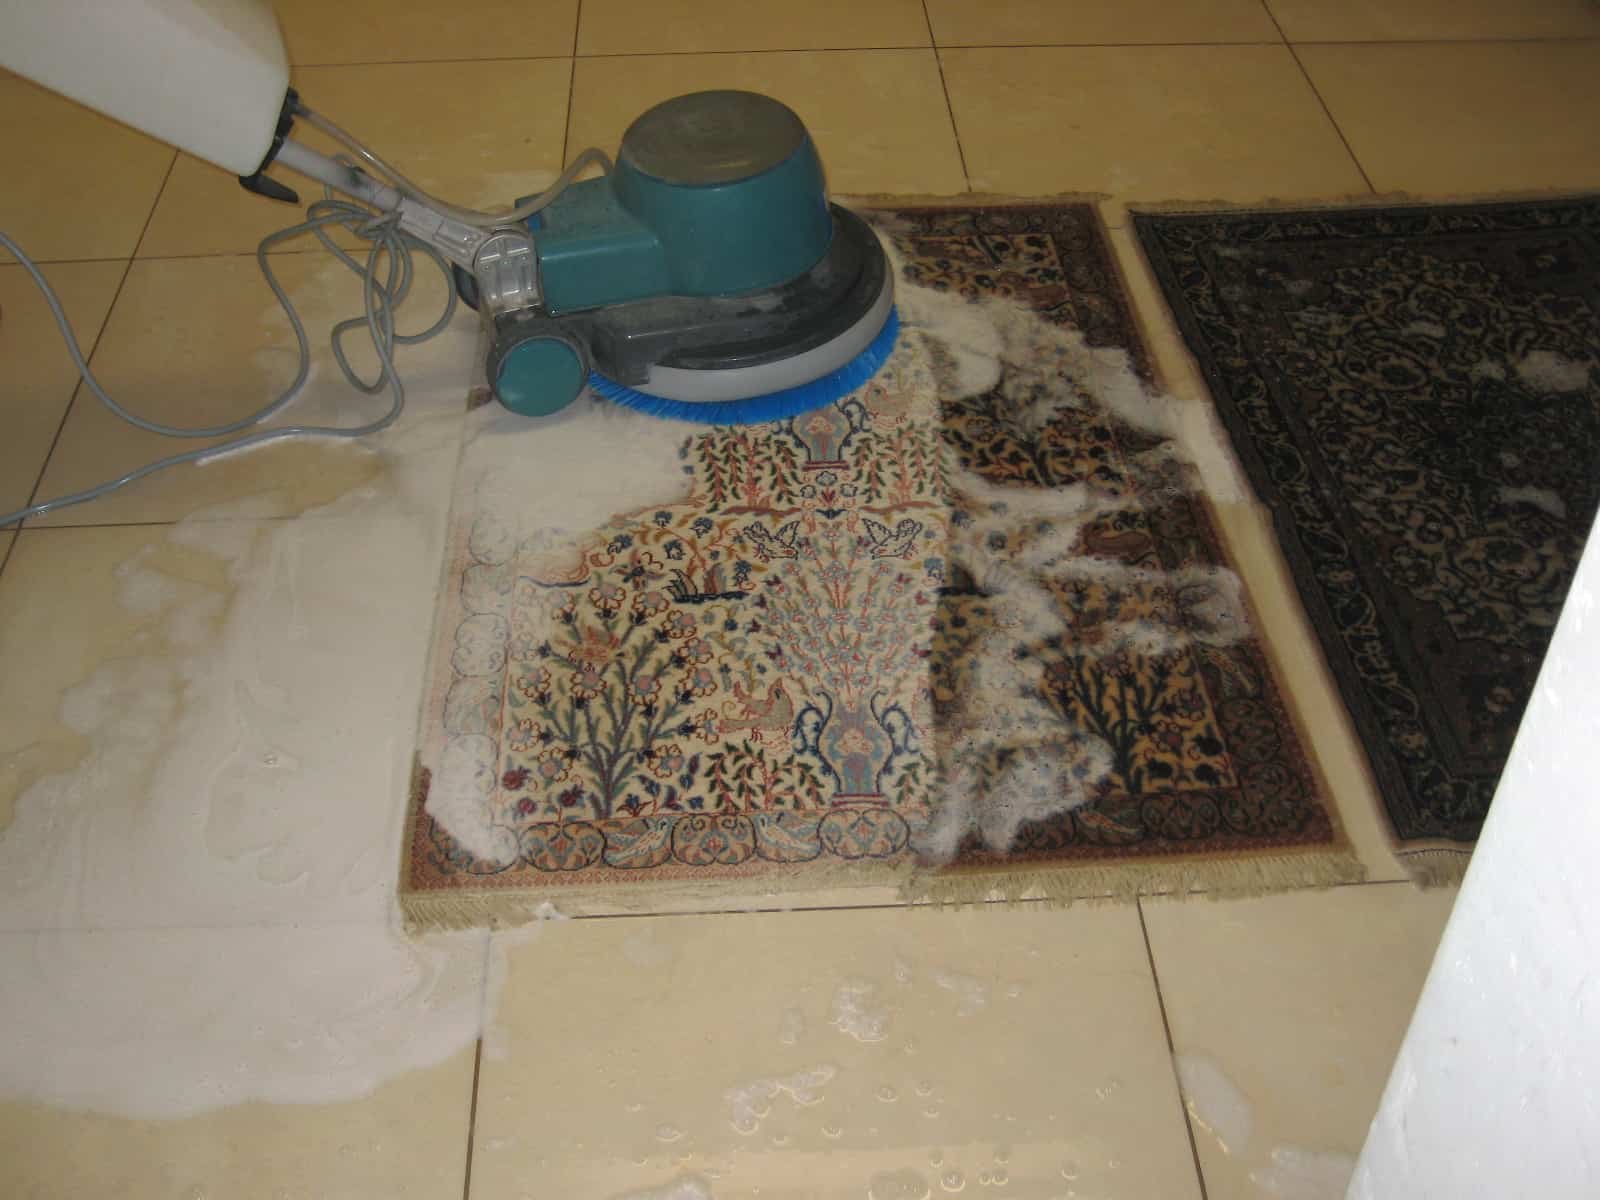 Conseils pour le nettoyage professionnel des tapis